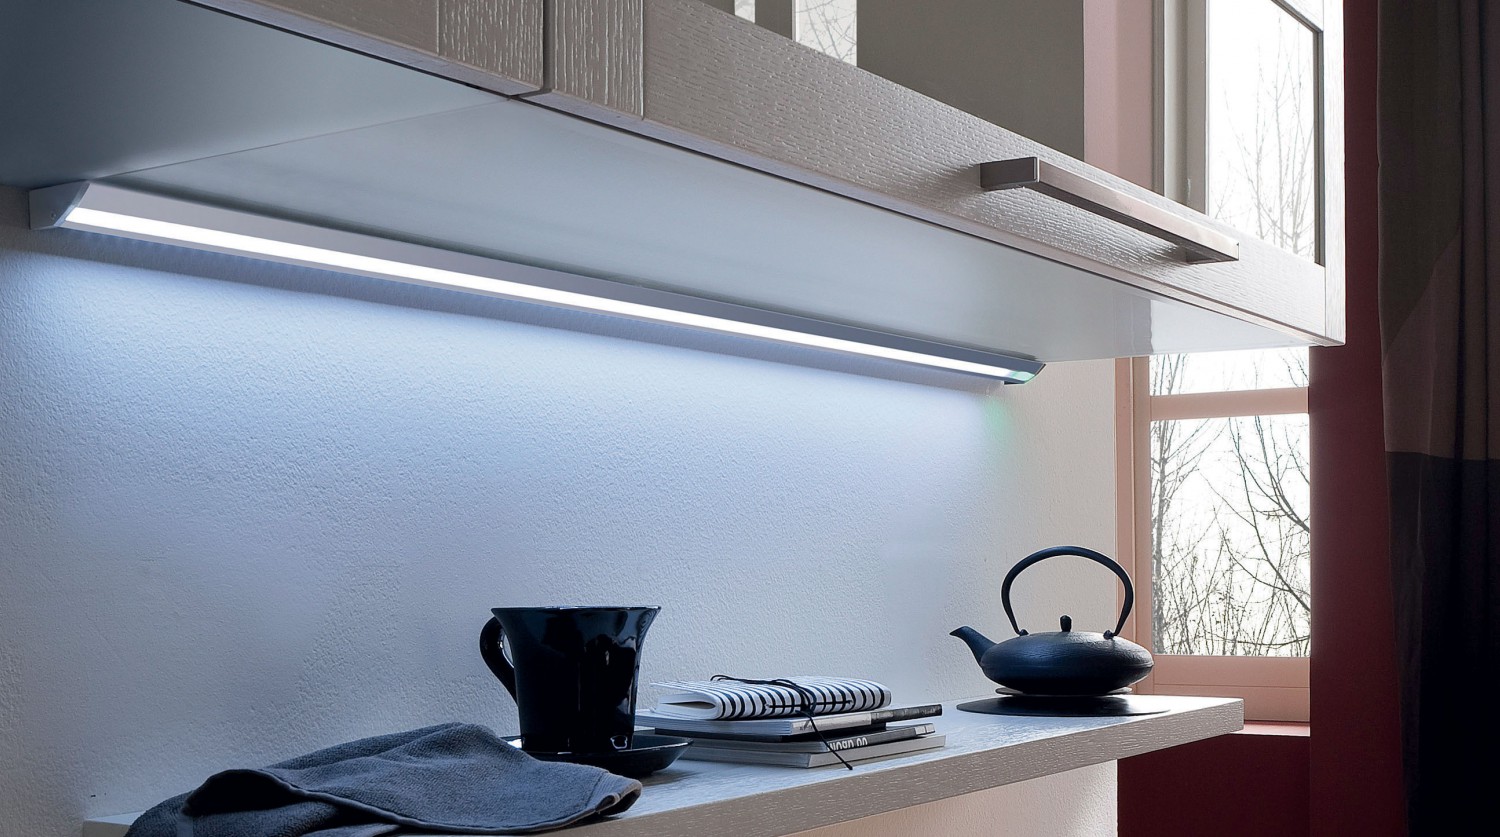 Подсветка кухни какая лучше. Светильник линейный Solalux Linero -s 900. Светильник светодиодный для кухни под шкафы Kanlux Pax led 10w NW 577мм. Светильник линейный Corner TL 2000. Светодиодный светильник Derby 900 мм.